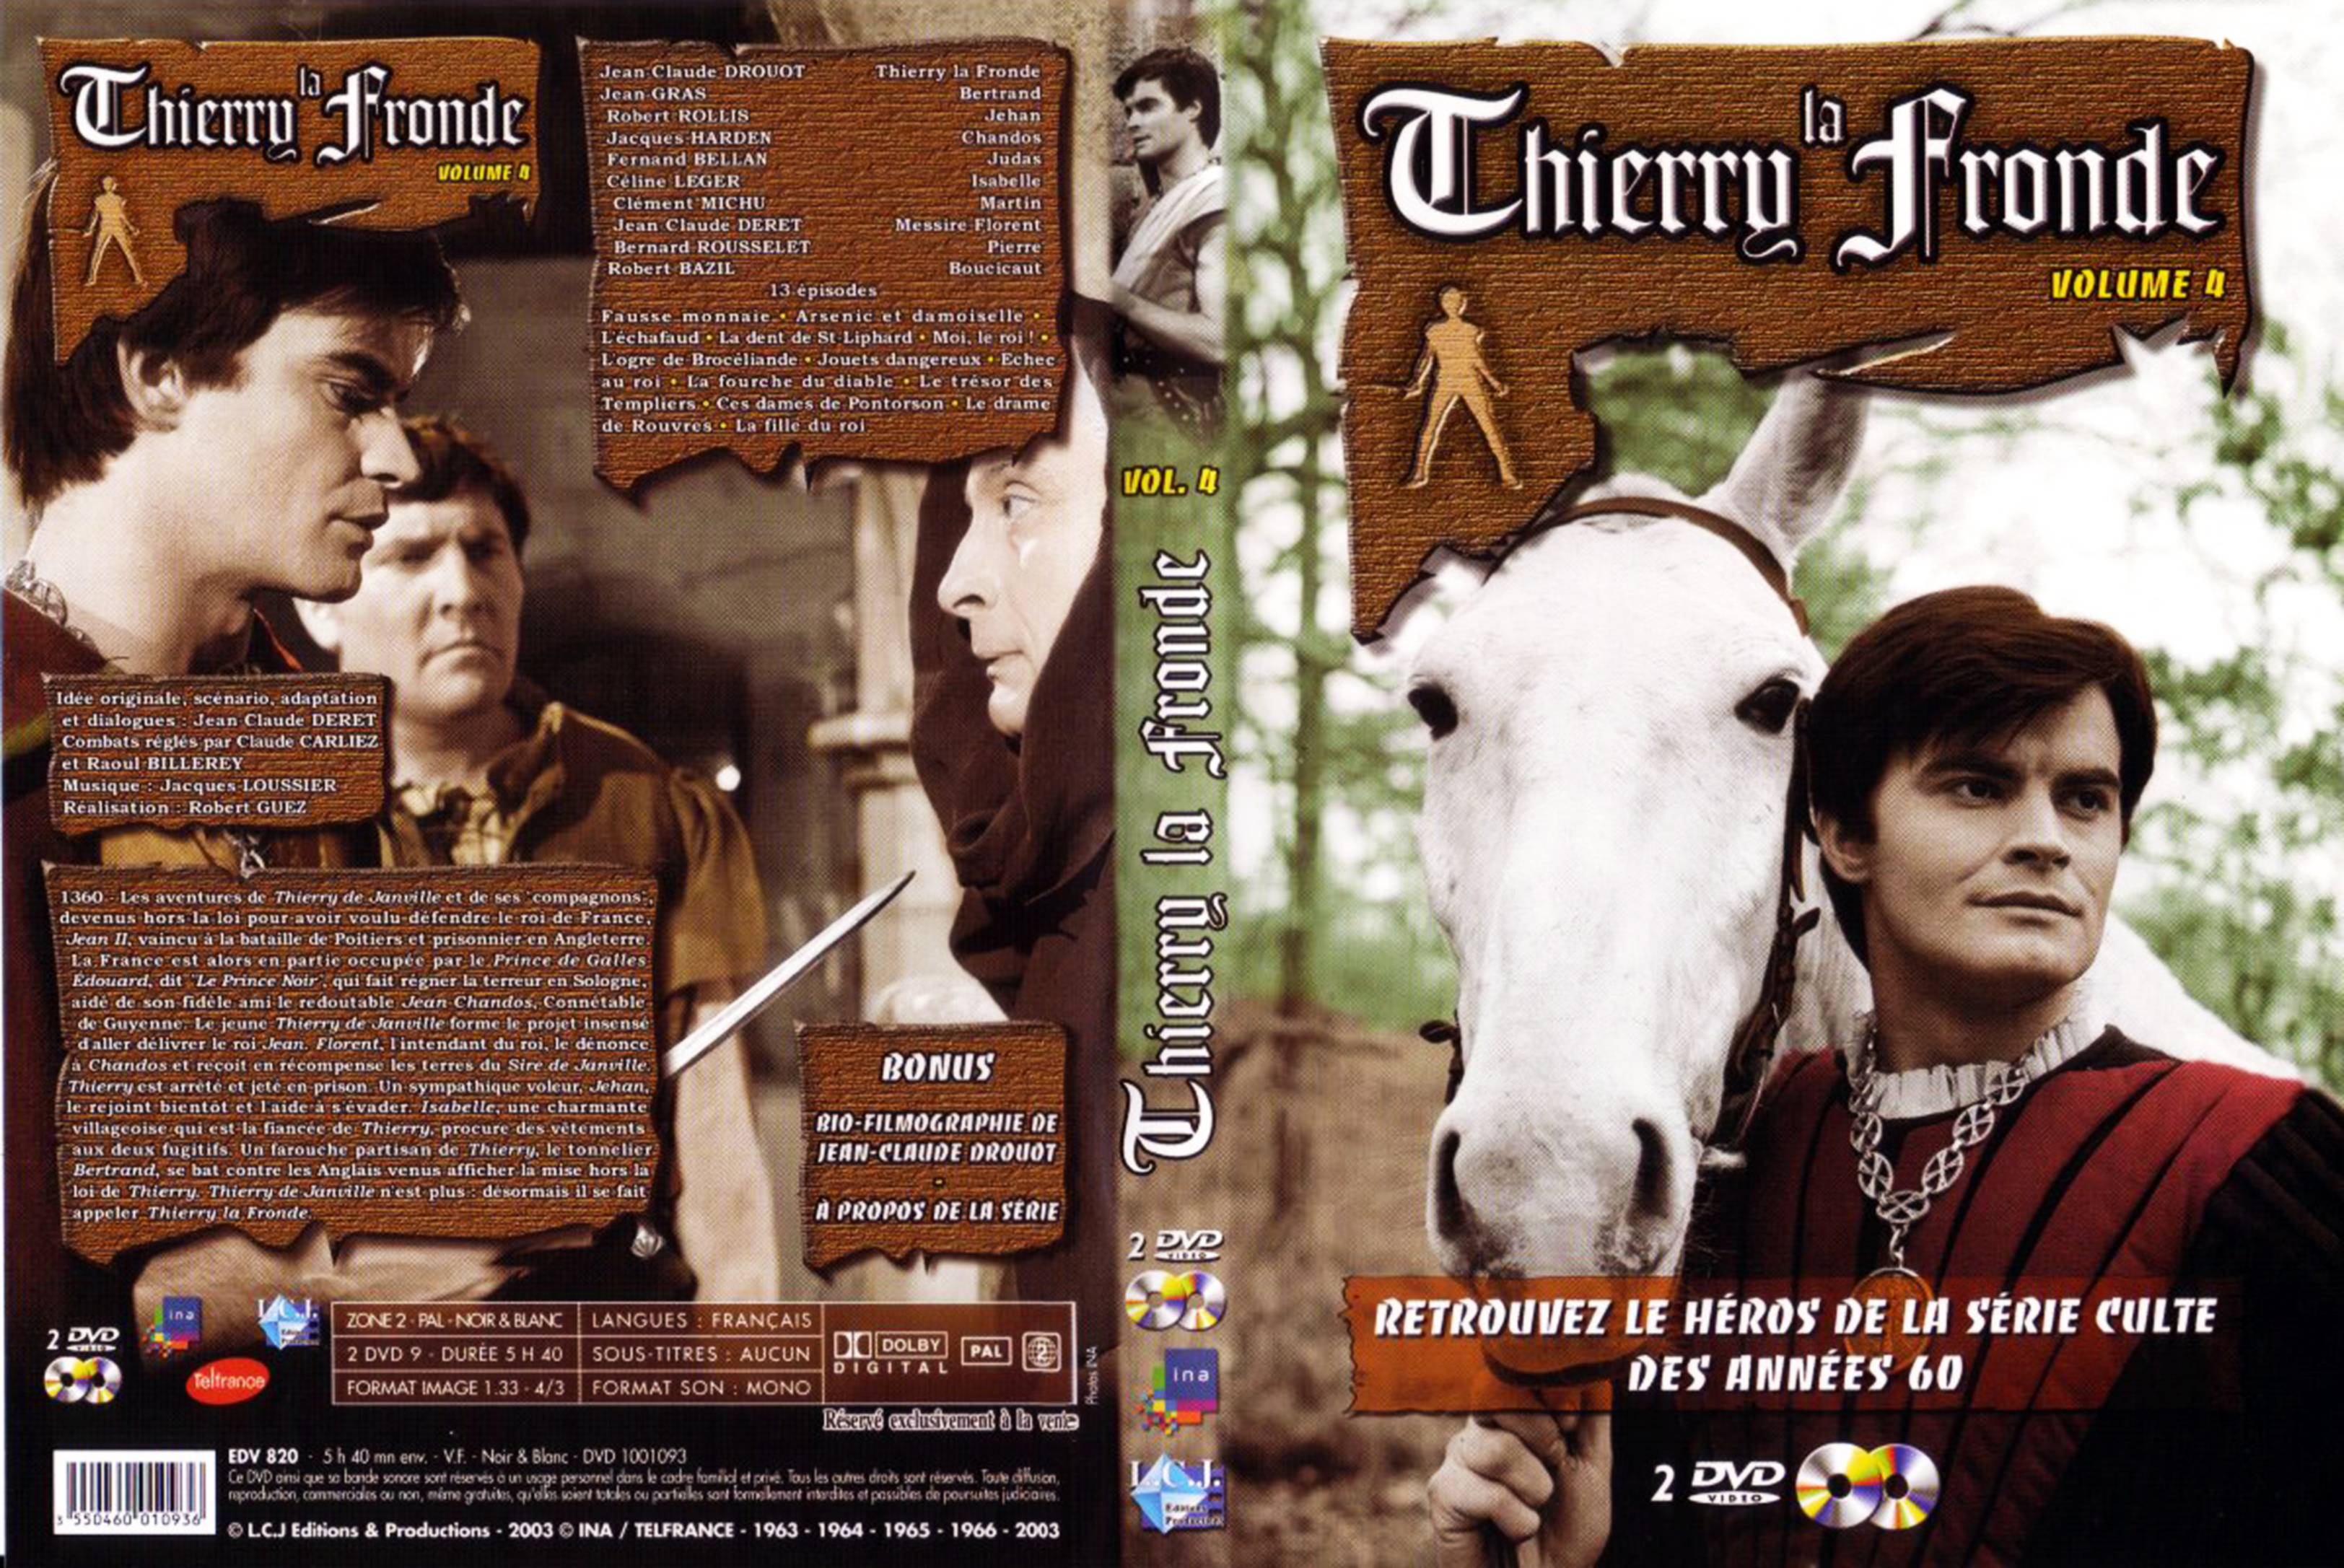 Jaquette DVD Thierry La Fronde vol 04 v2